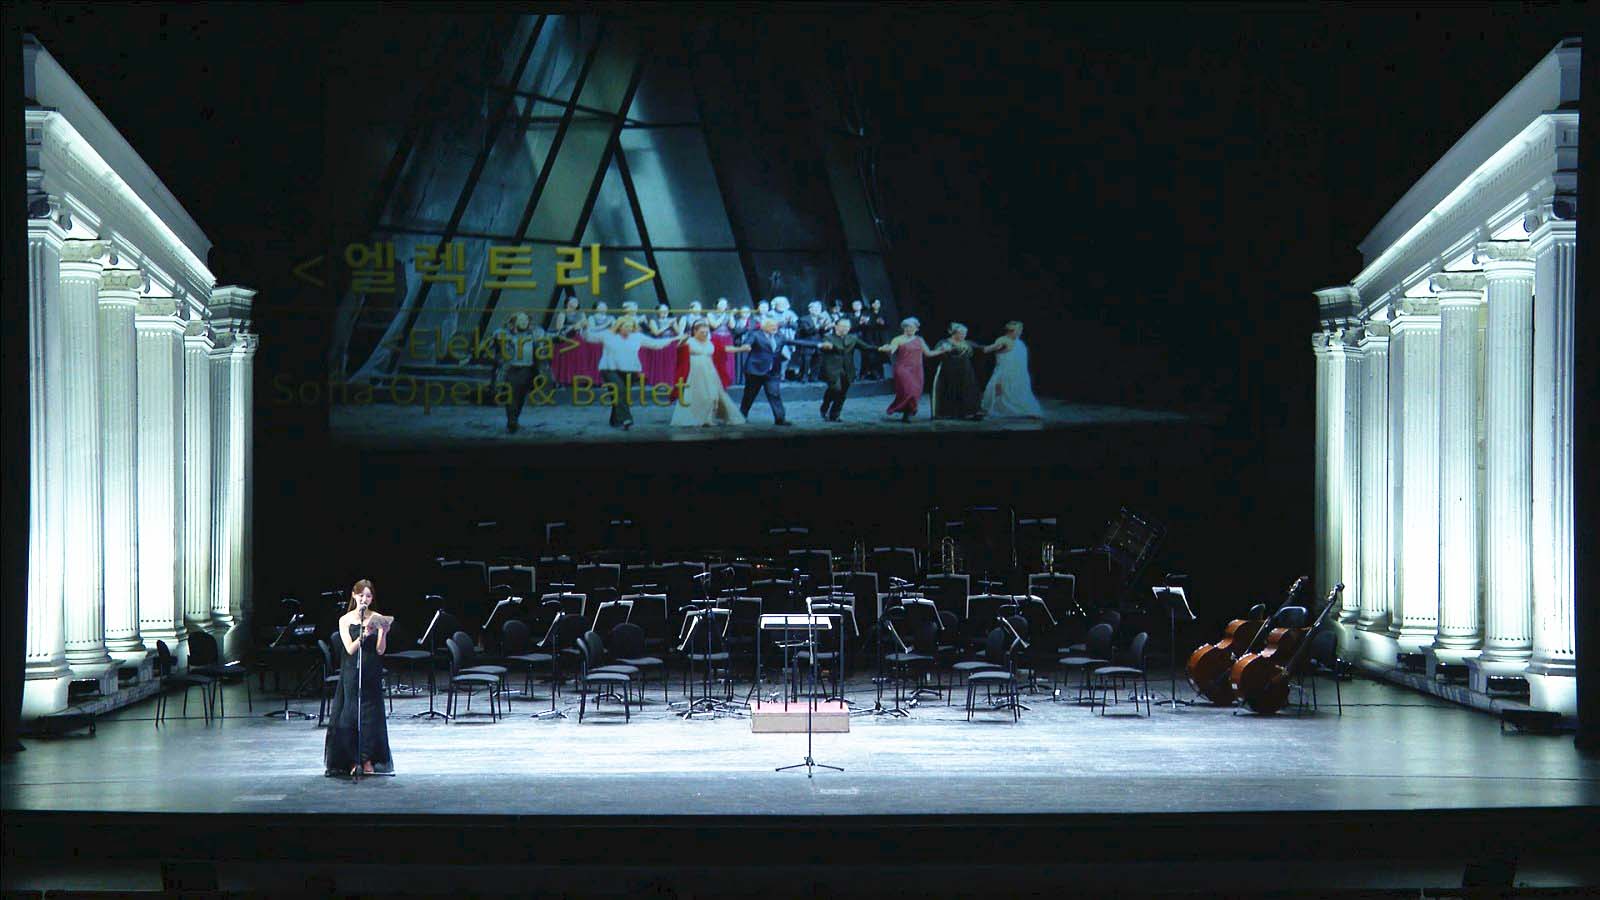 Снимка: „Електра“ от Рихард Щраус на Софийската опера получи голямата награда на Международния оперен фестивал в Тегу, Корея